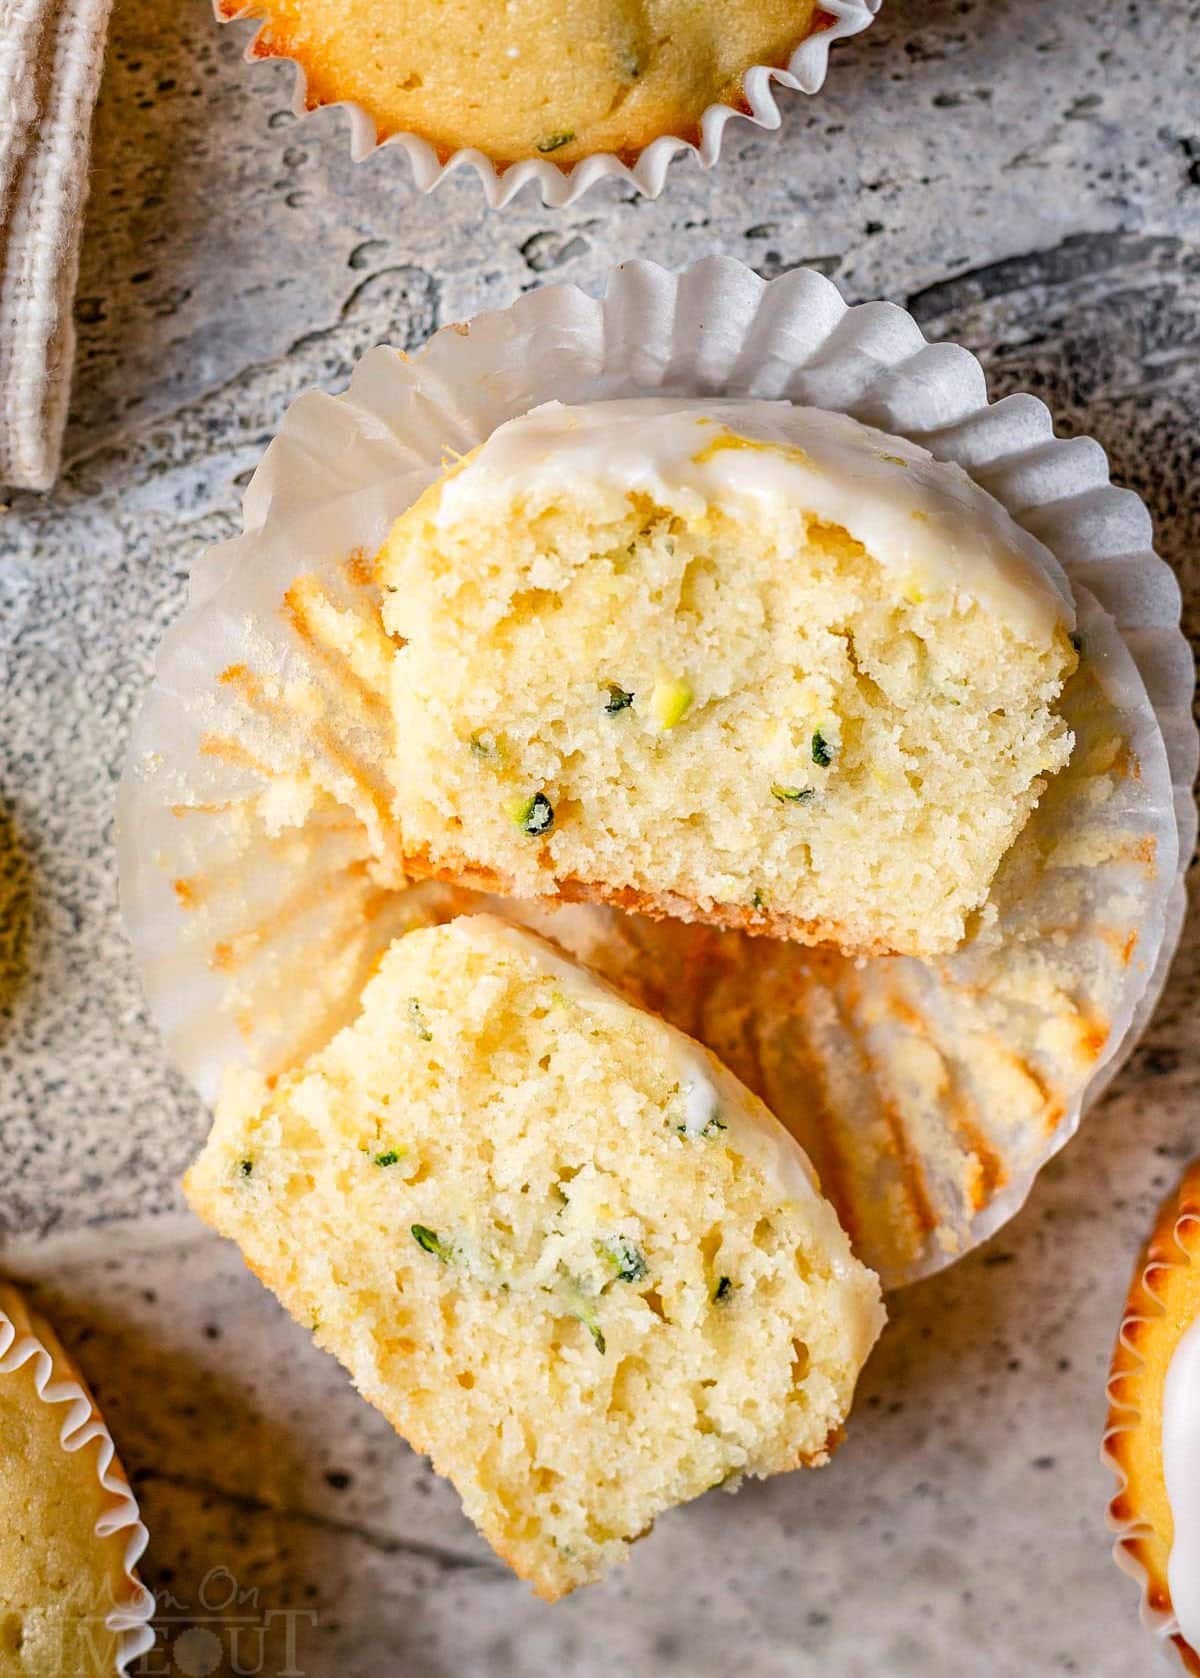 muffin di zucchine al limone con fodera bianca guarnita con glassa al limone tagliata a metà e seduta su uno sfondo grigio.